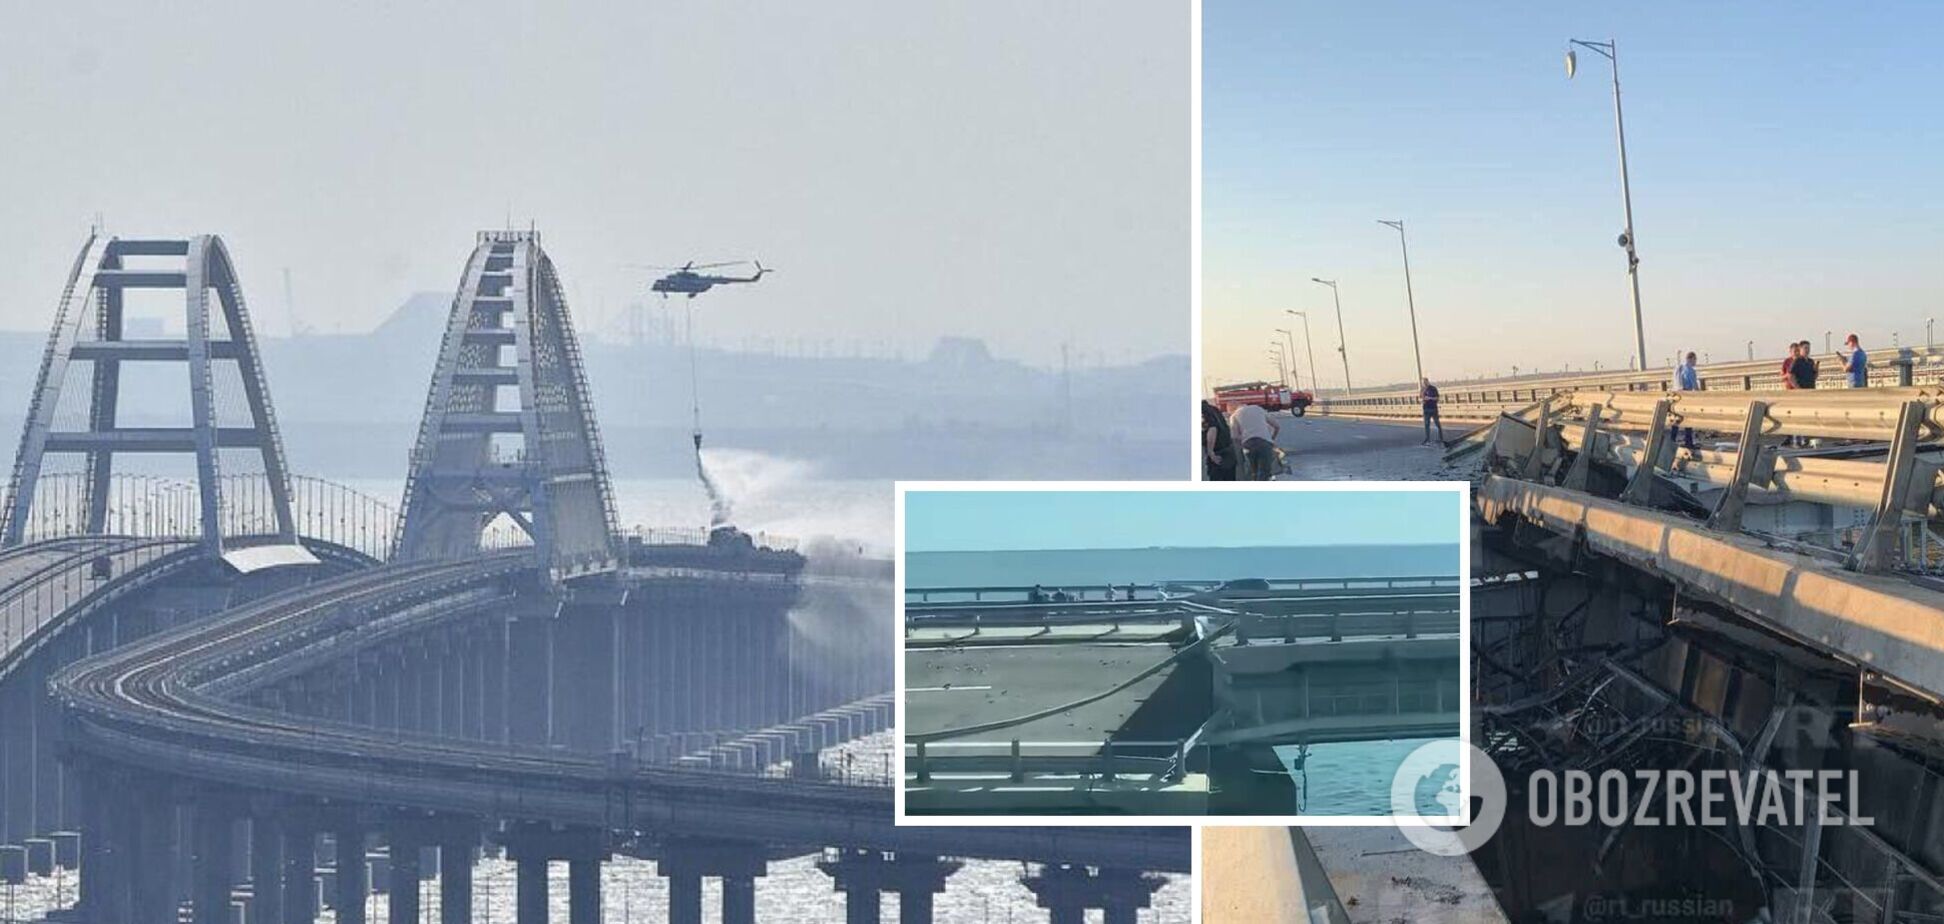 Надводные дроны атаковали Крымский мост, обрушился один из пролетов: хронология событий (обновляется)